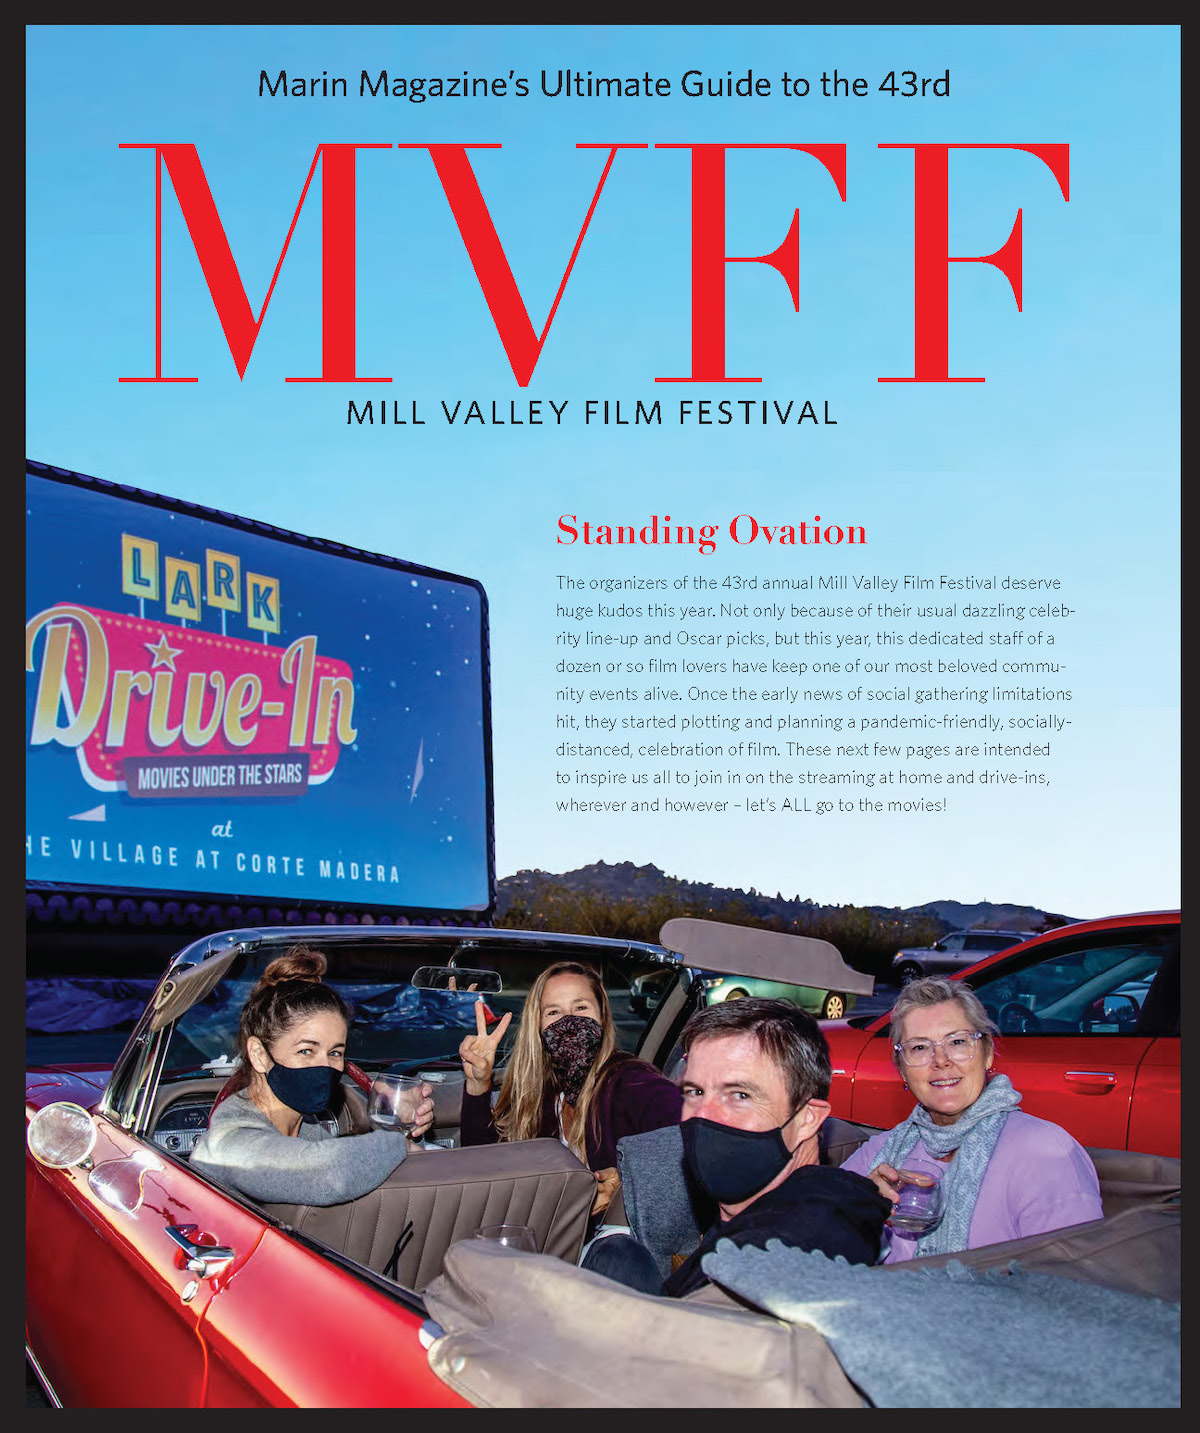 Mill Valley Film Festiva 2020